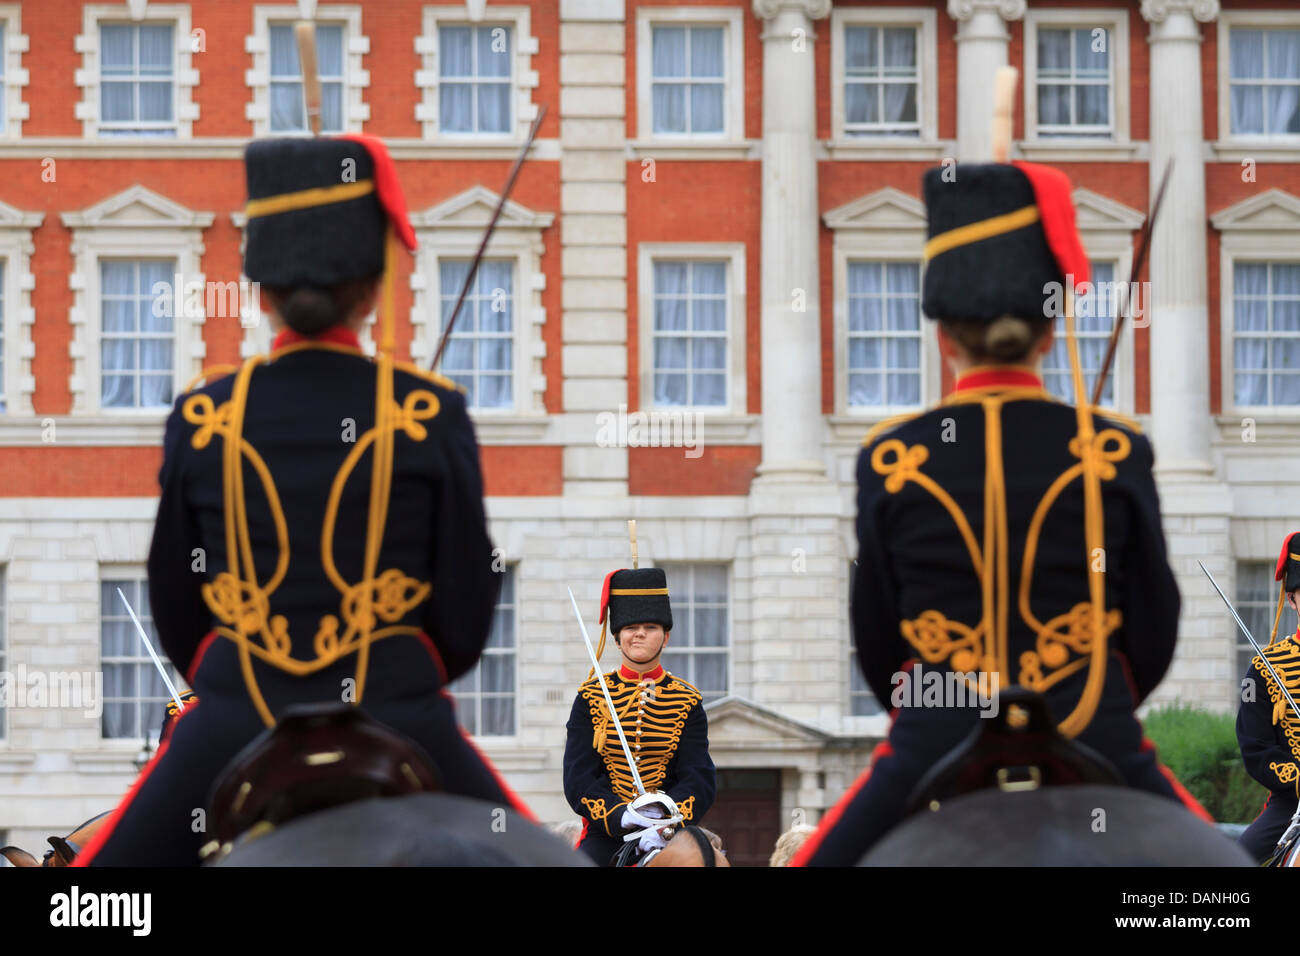 Desfile de guardias a caballo, Whitehall, Londres, Reino Unido. Foto de stock